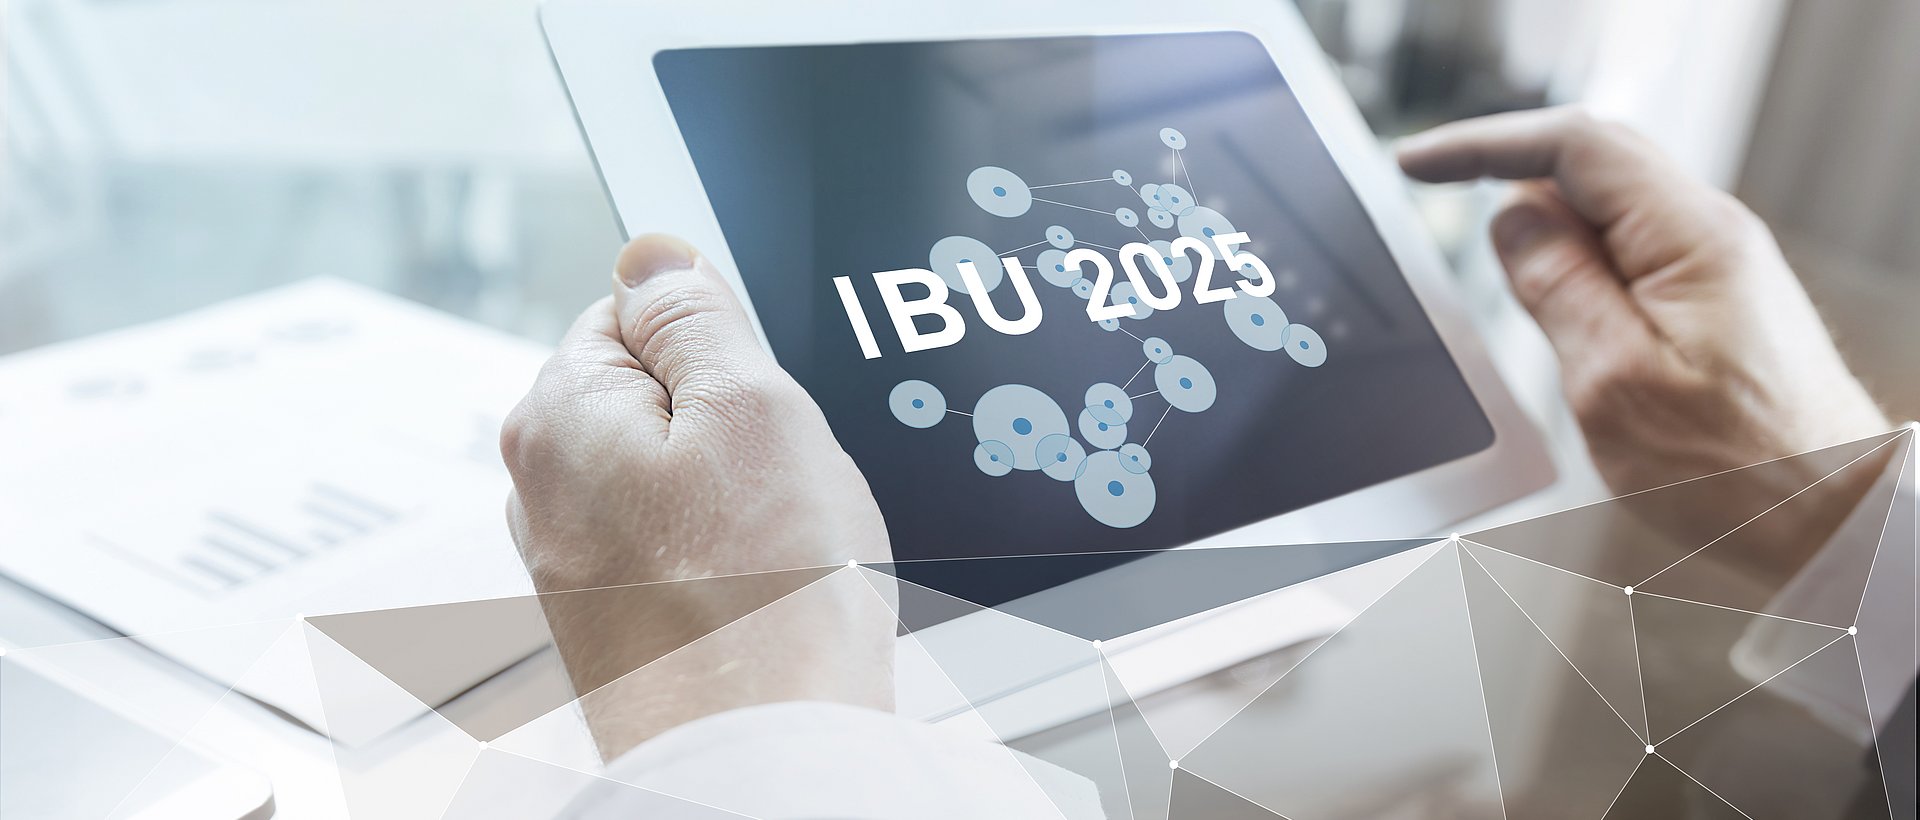 IBU-tec Plan 2020 Tablet pour les relations avec les investisseurs